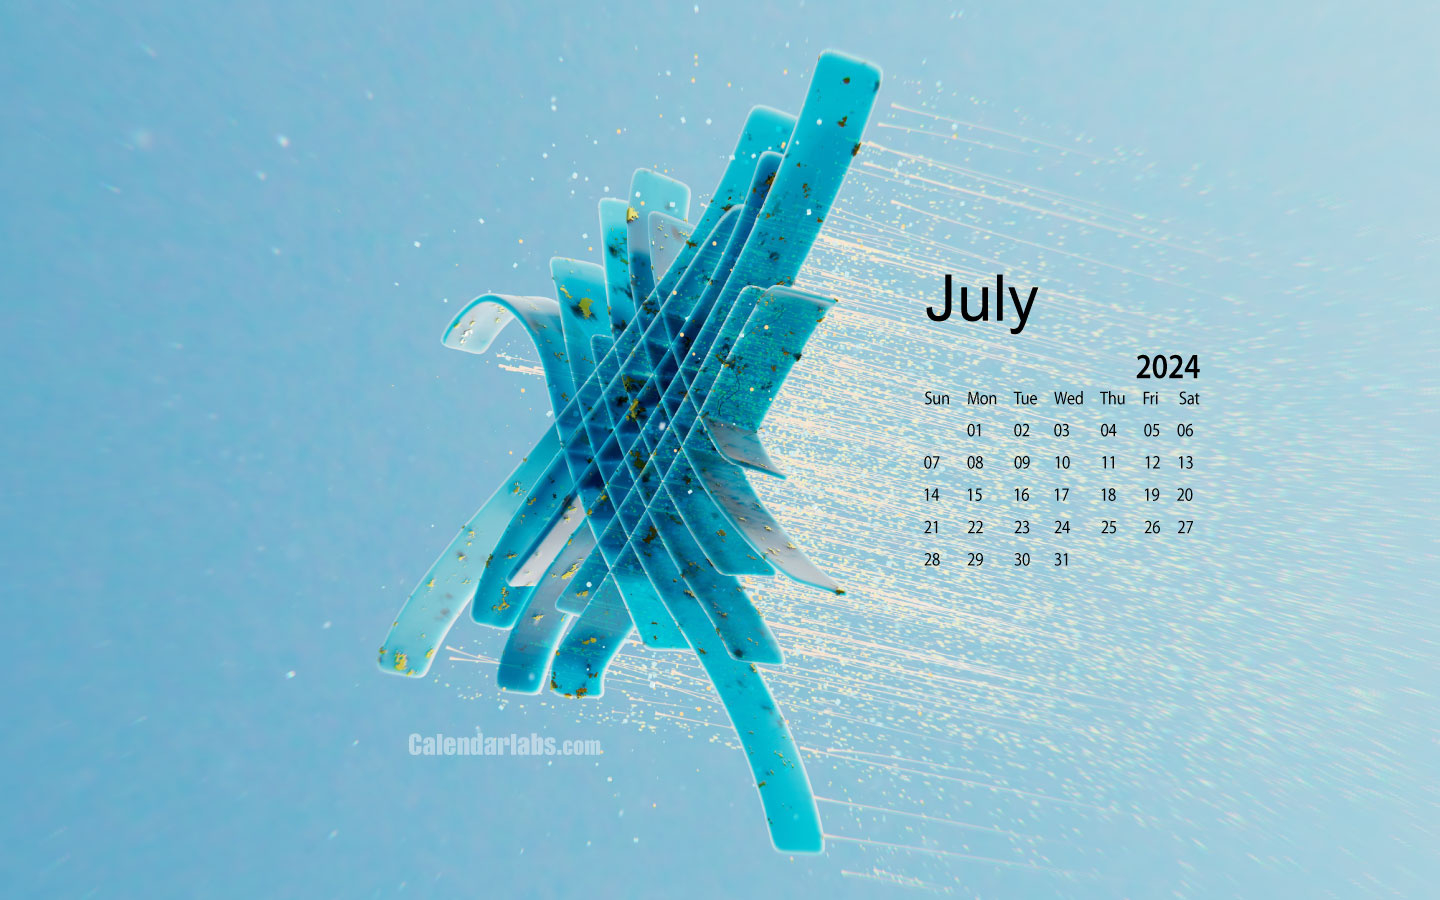 July 2024 Desktop Wallpaper Calendar - Calendarlabs for July 2024 Calendar Wallpaper